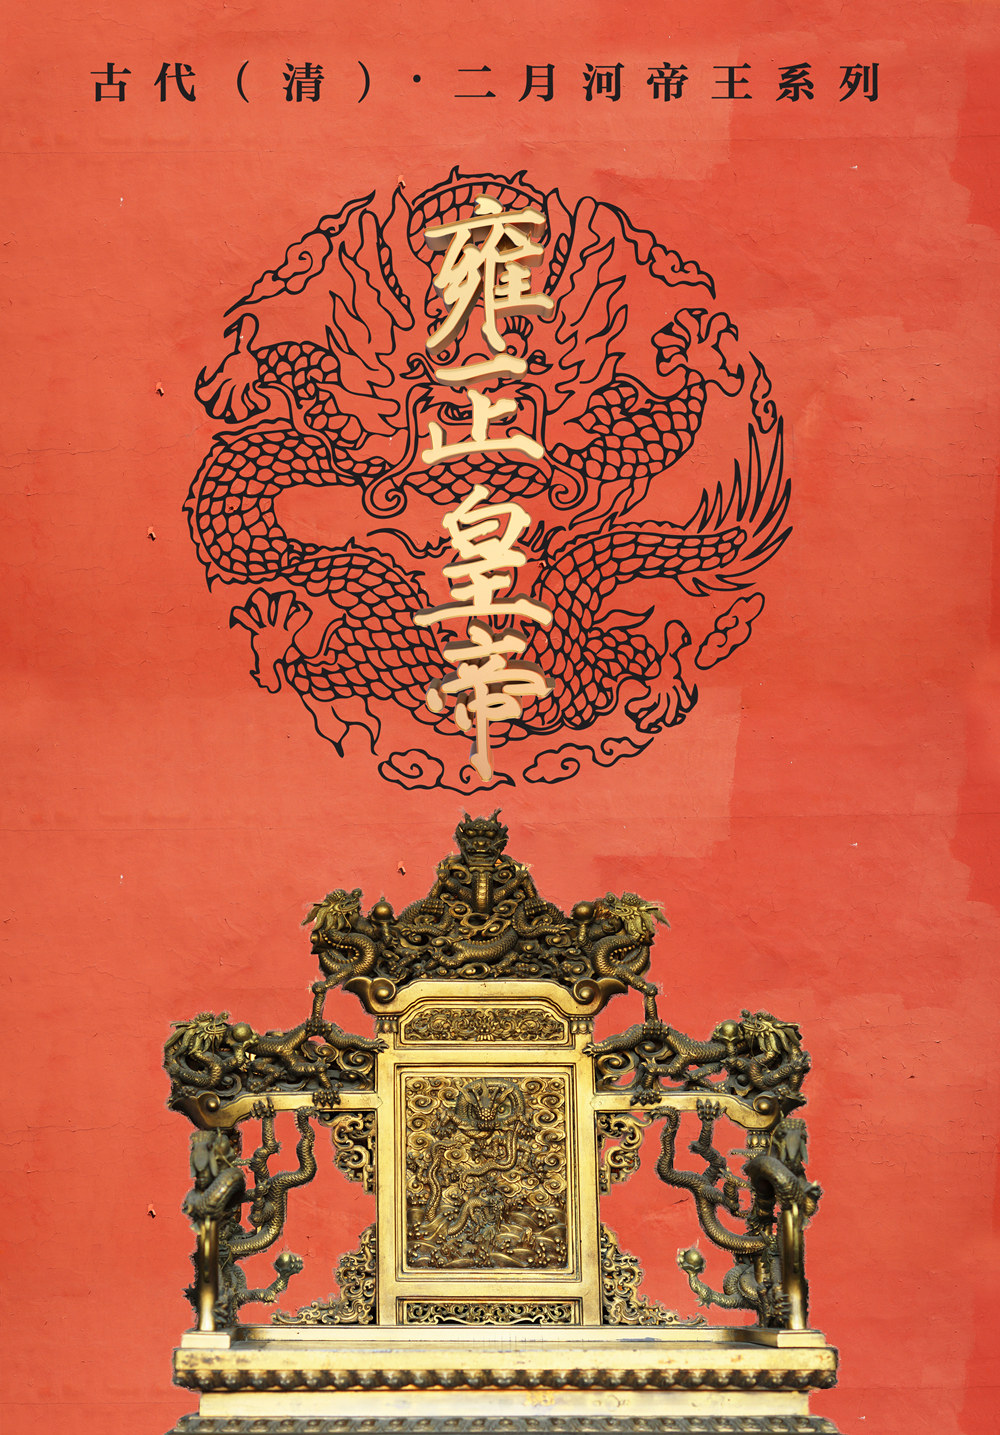 Yongzheng Emperor